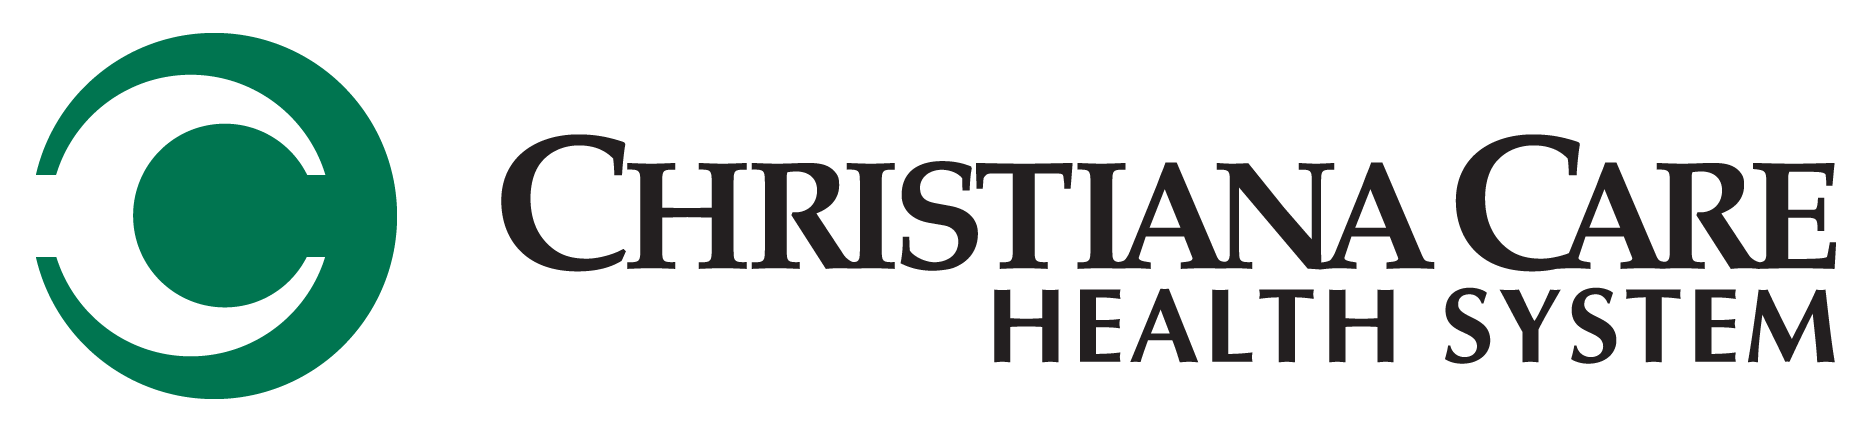 Christiana Care logo